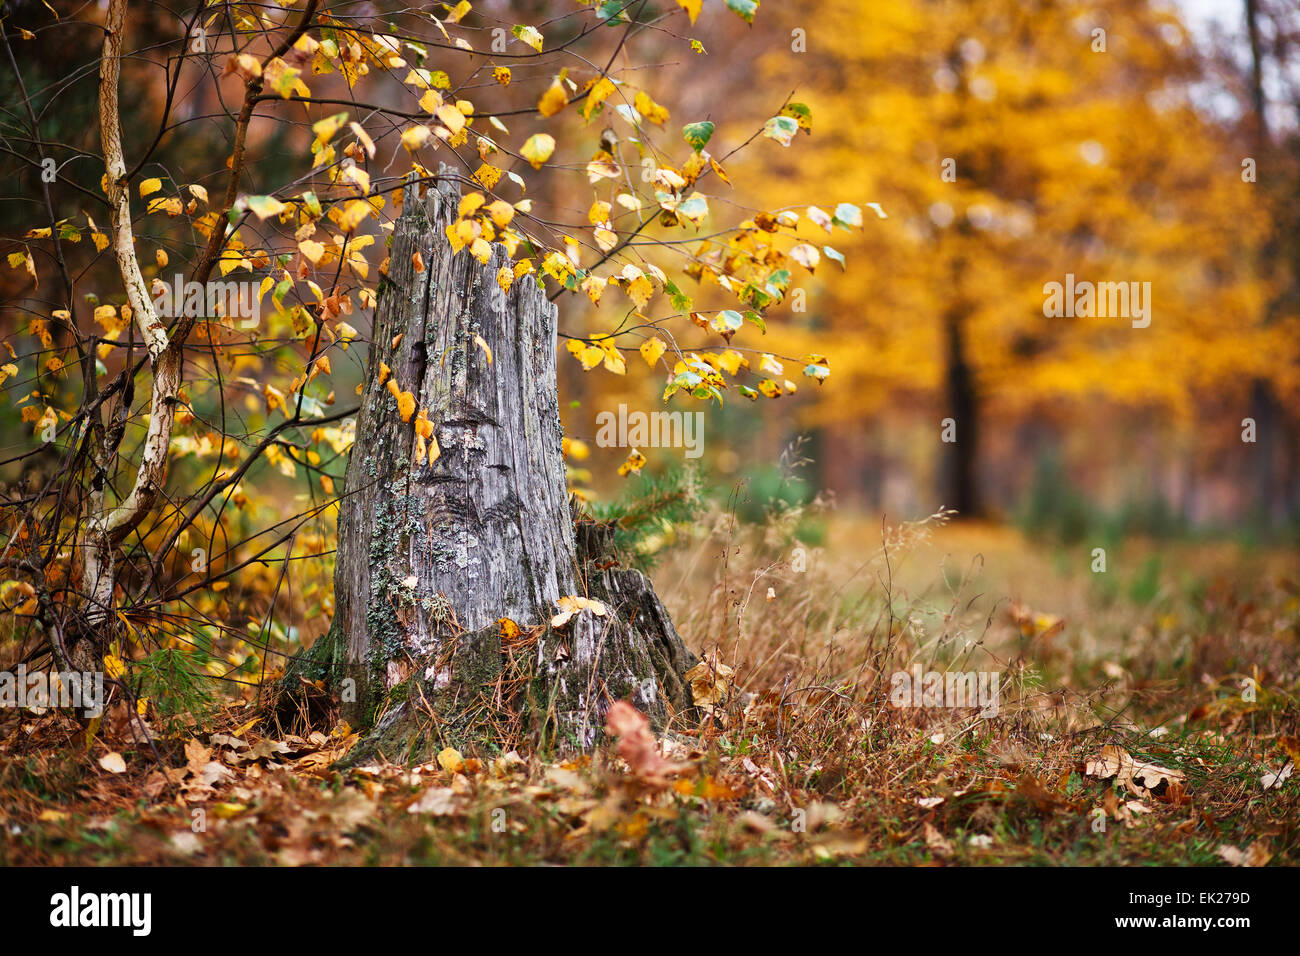 old tree stump in autumn Stock Photo